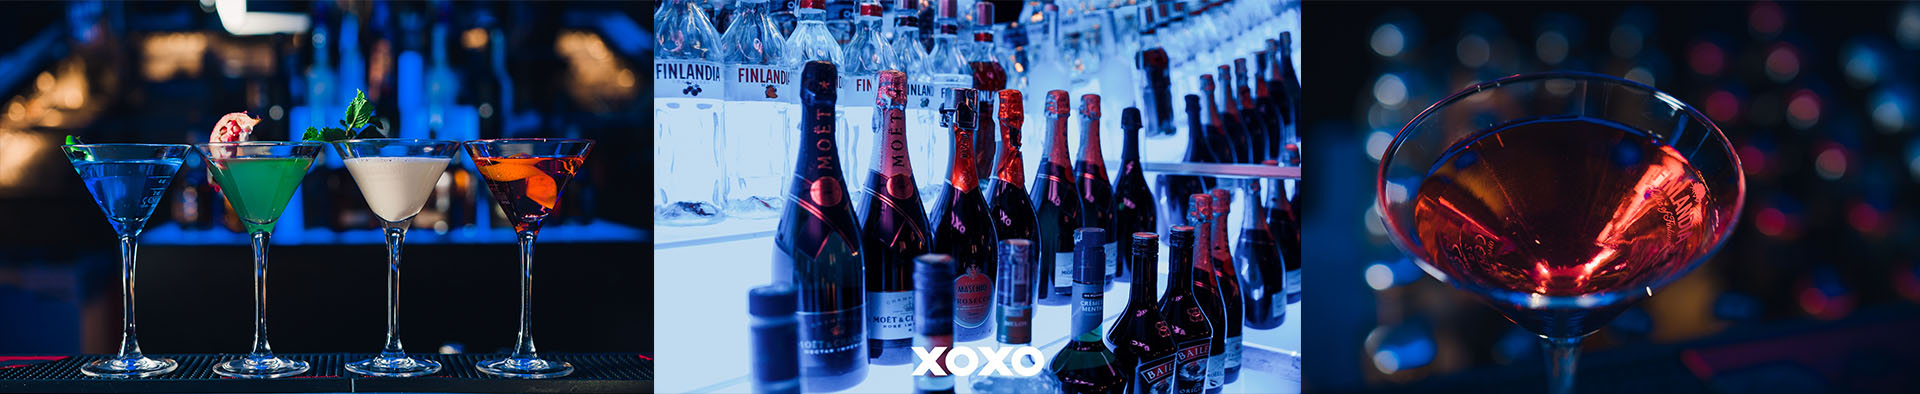 Szukasz klubu na wynajem w Warszawie? Xoxo party w centrum stolicy jest miejscem którego szukasz!